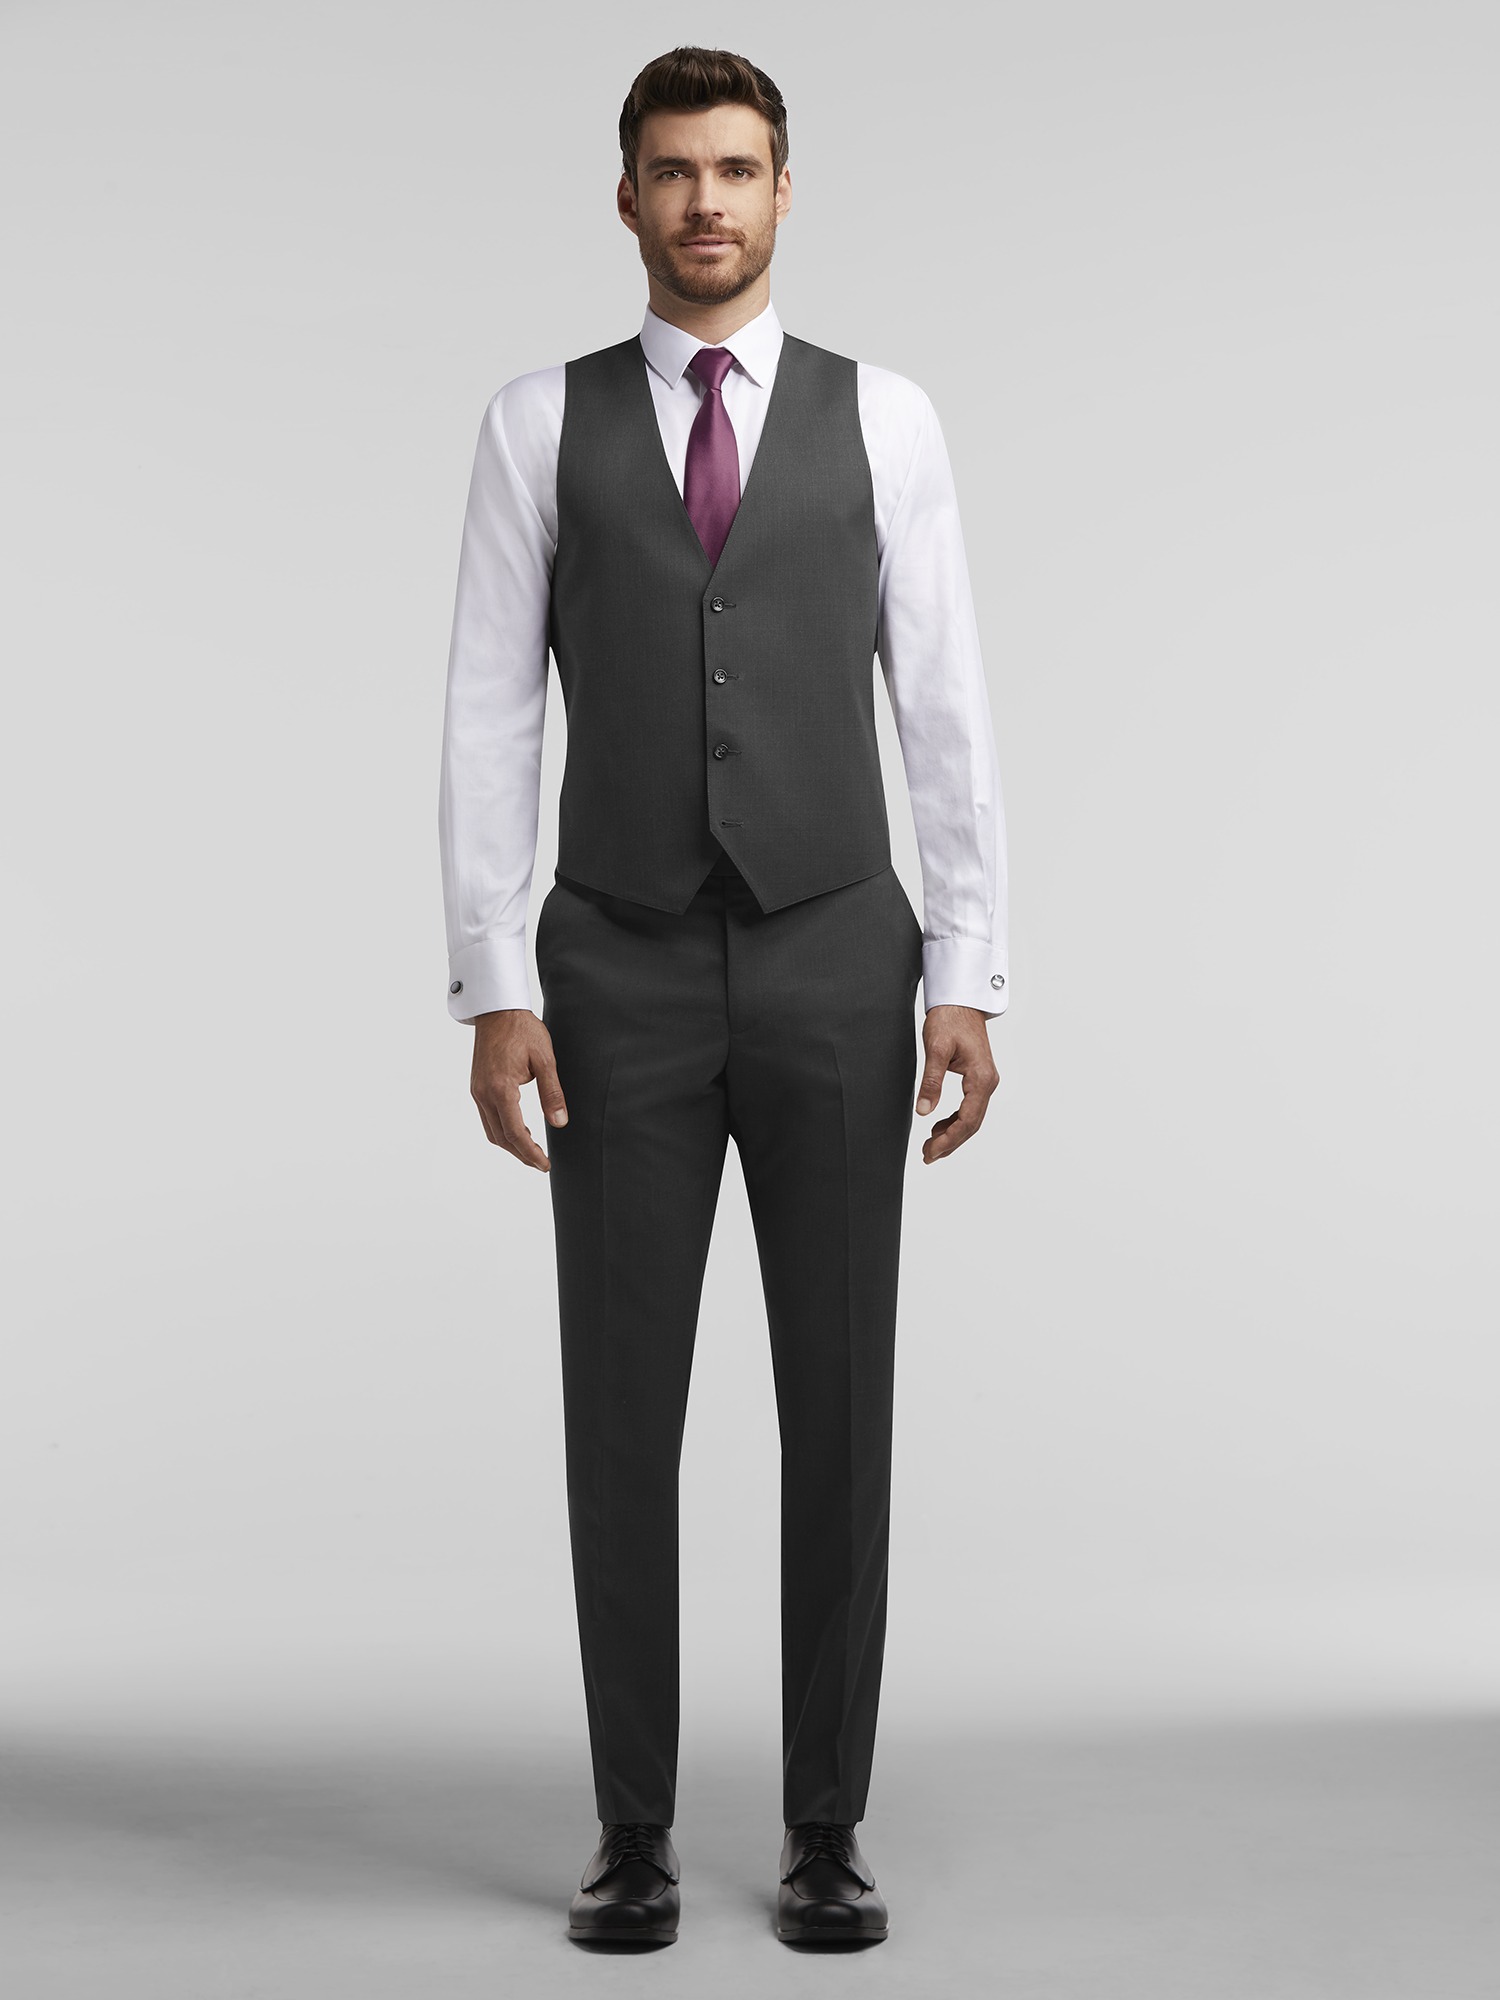 Grey suit black shirt, Grey suit white shirt, Grey suit men